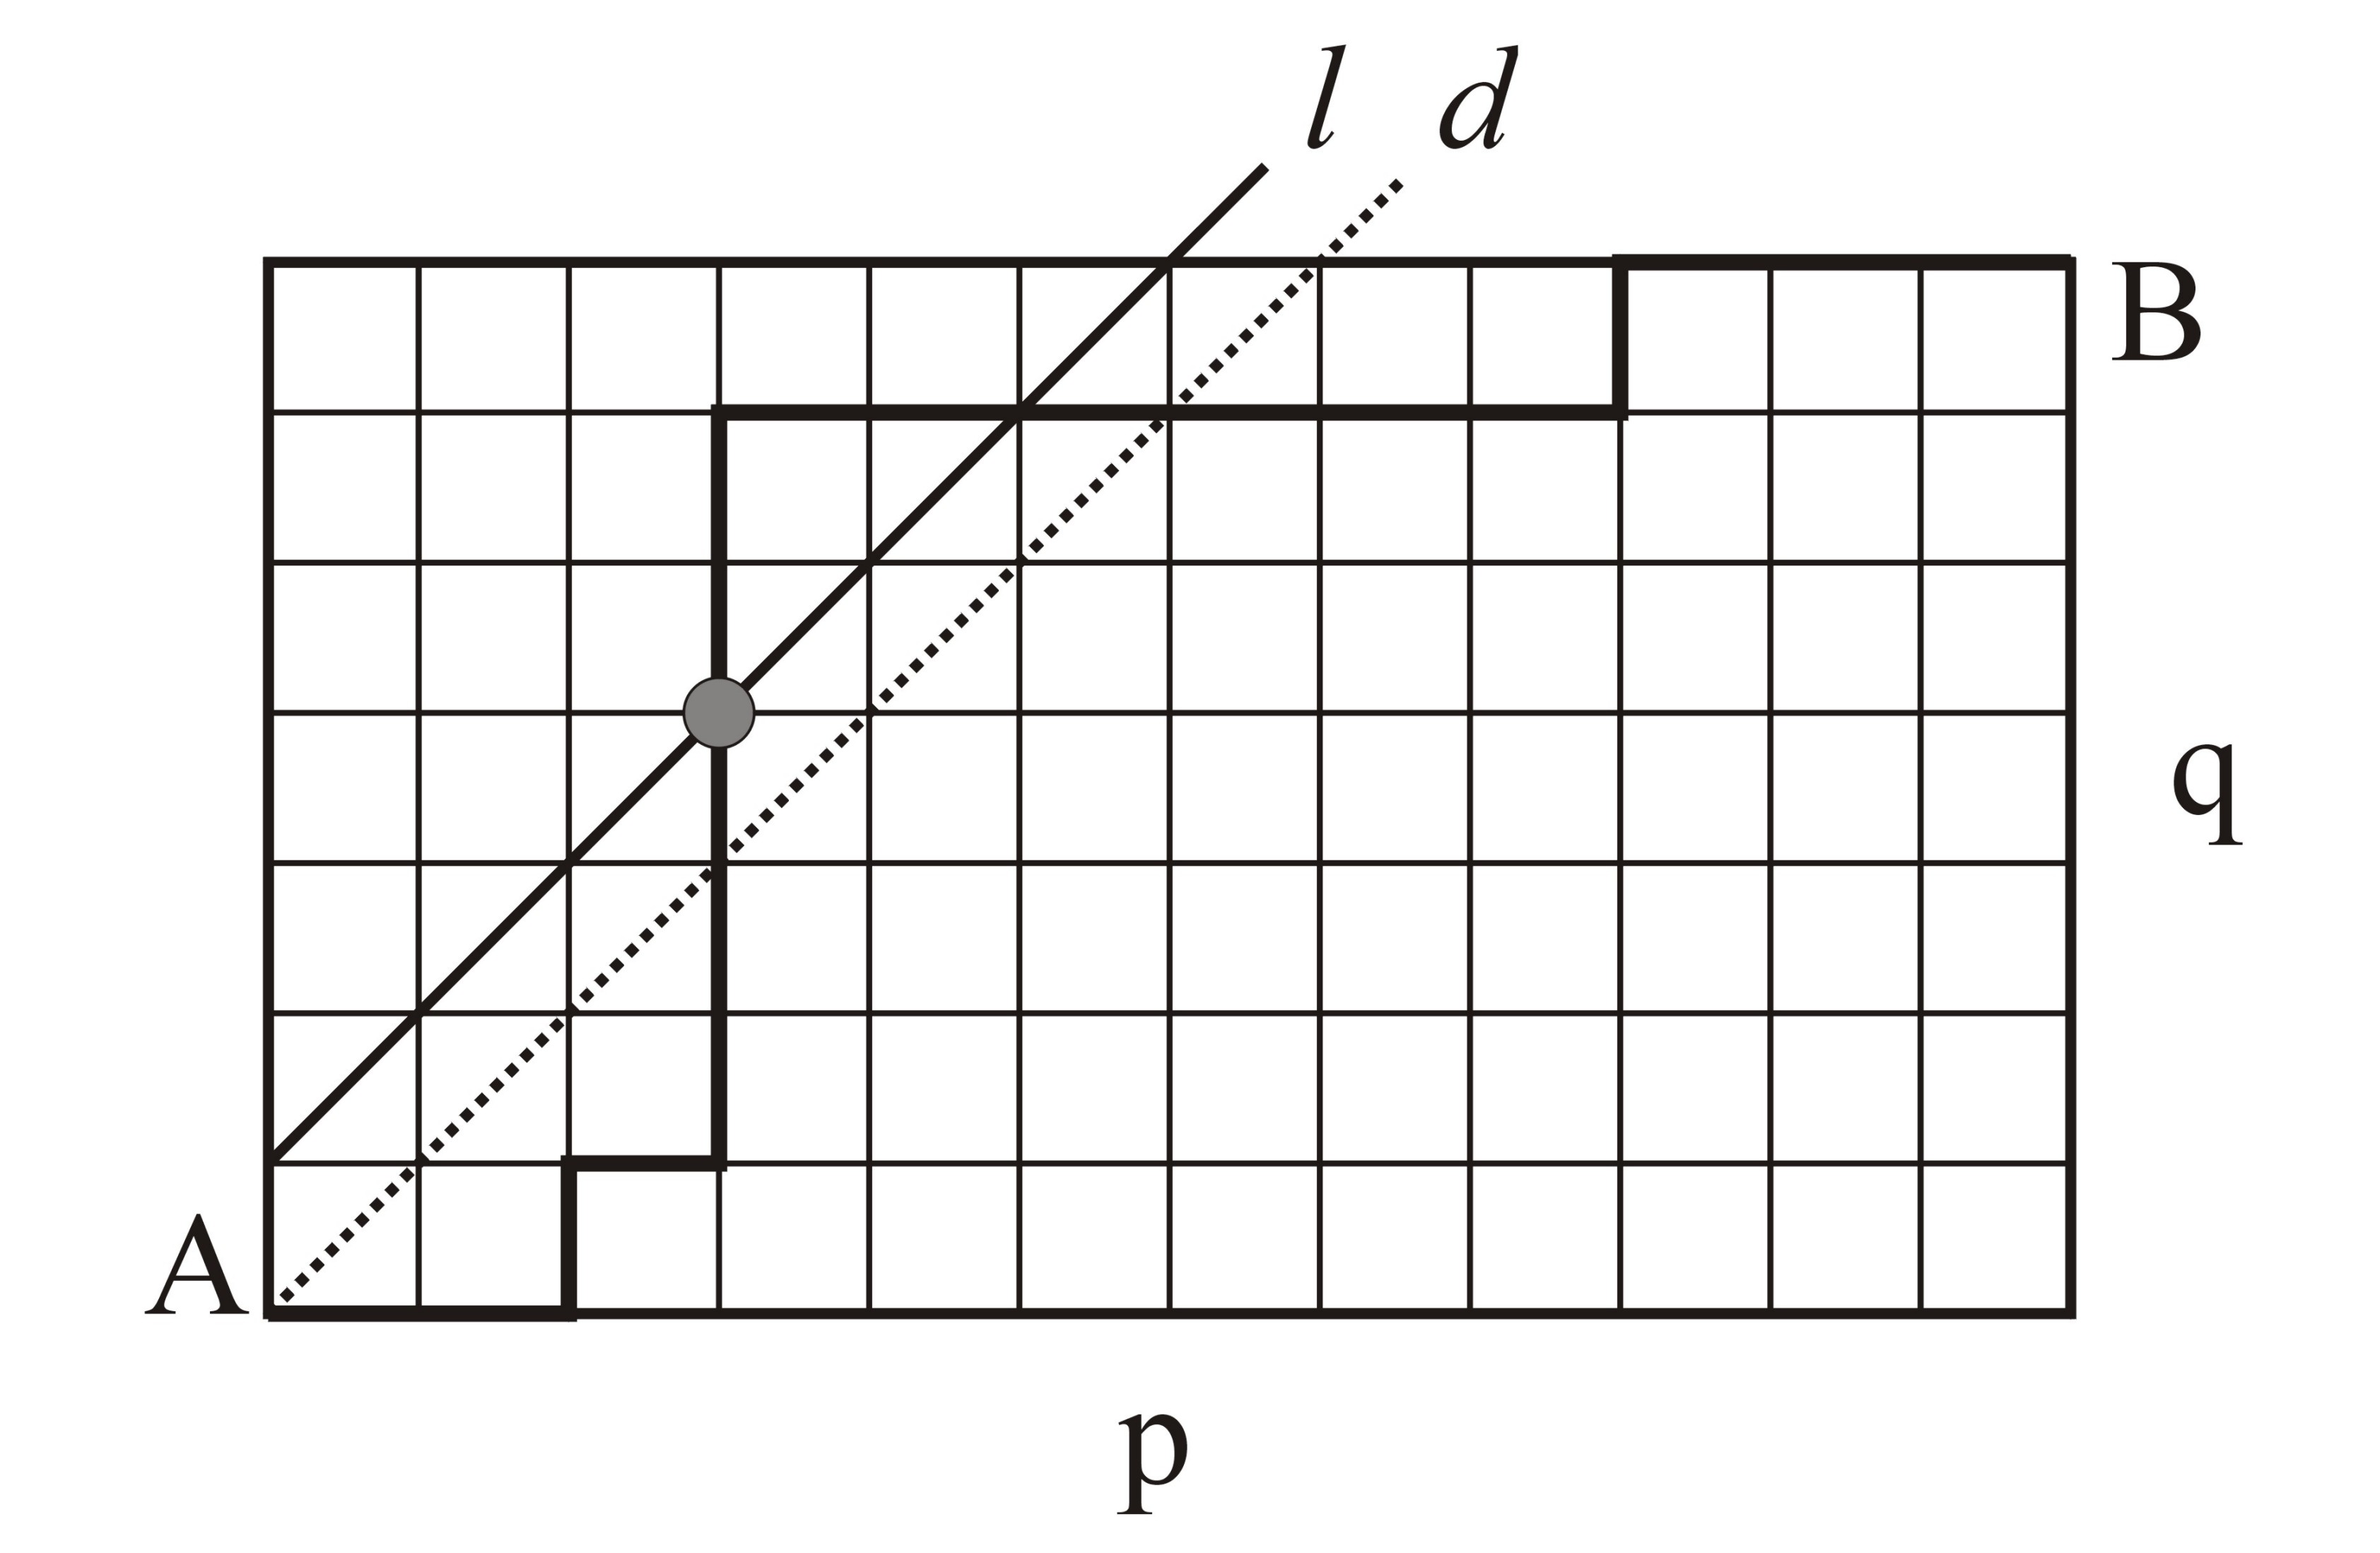 (q 1) (p + 1) olan bir ızgaranın köşe noktaları olduğu için C den B ye giden yolların sayısı ( ) ( p+q p+1 olarak bulunur.